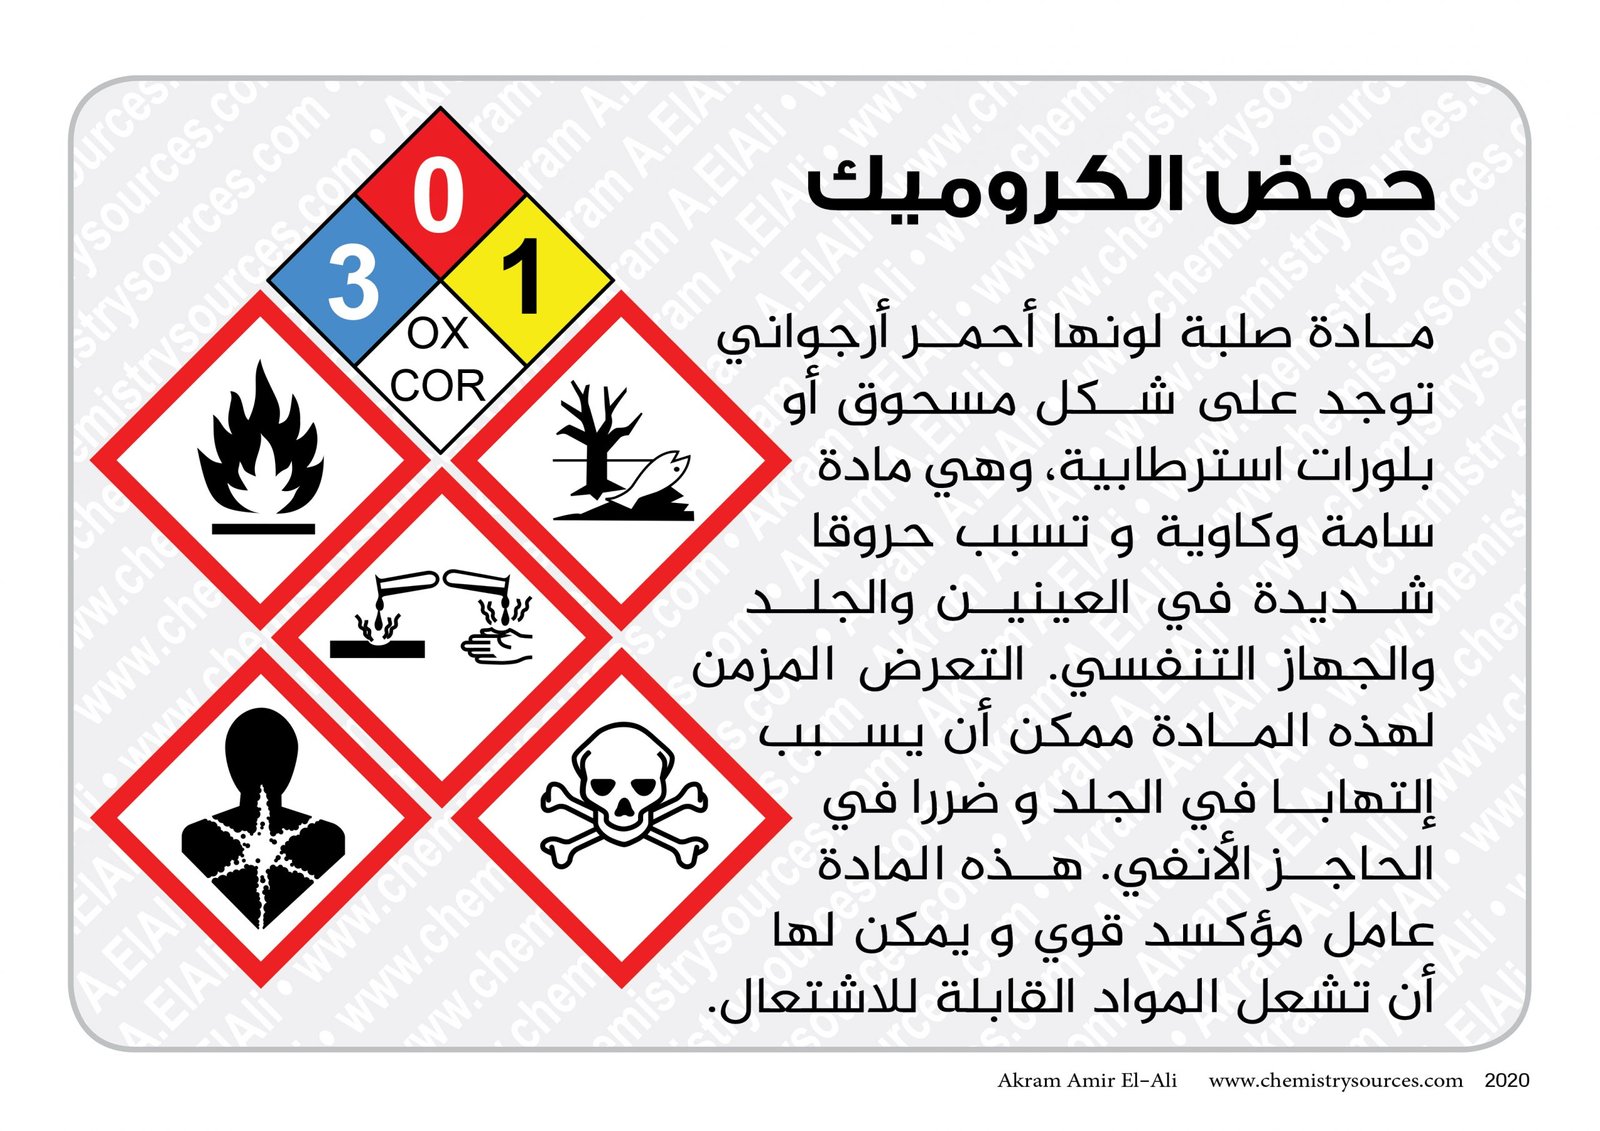 بطاقات اخطار المواد الكيميائية المختصرة10 scaled